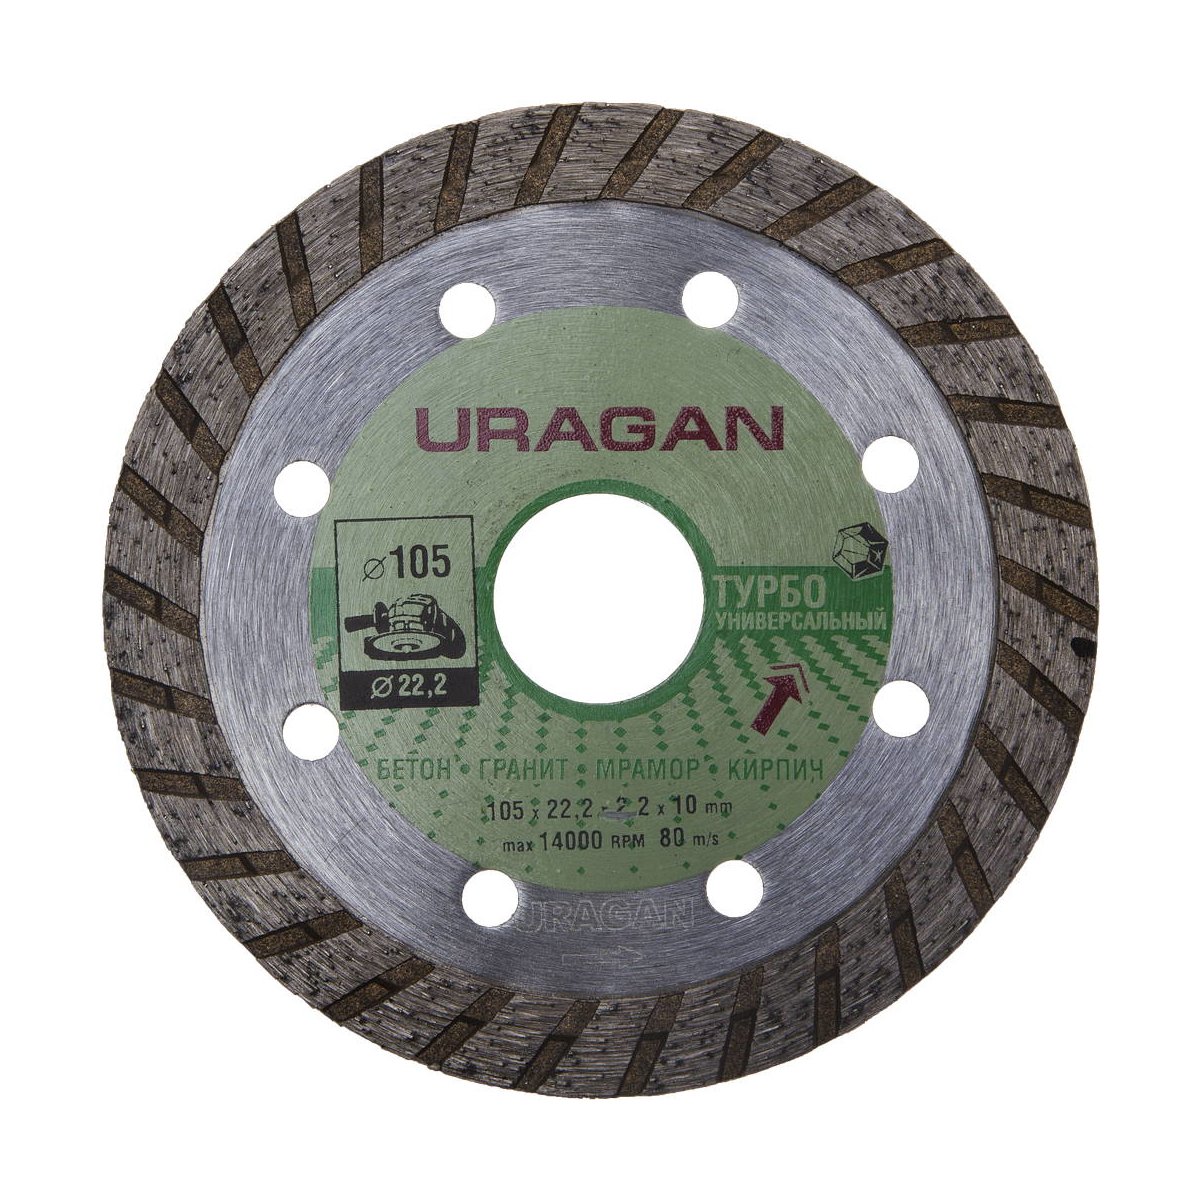 URAGAN 105 мм, по бетону, камню, кирпичу, алмазный диск отрезной ТУРБО 909-12131-105